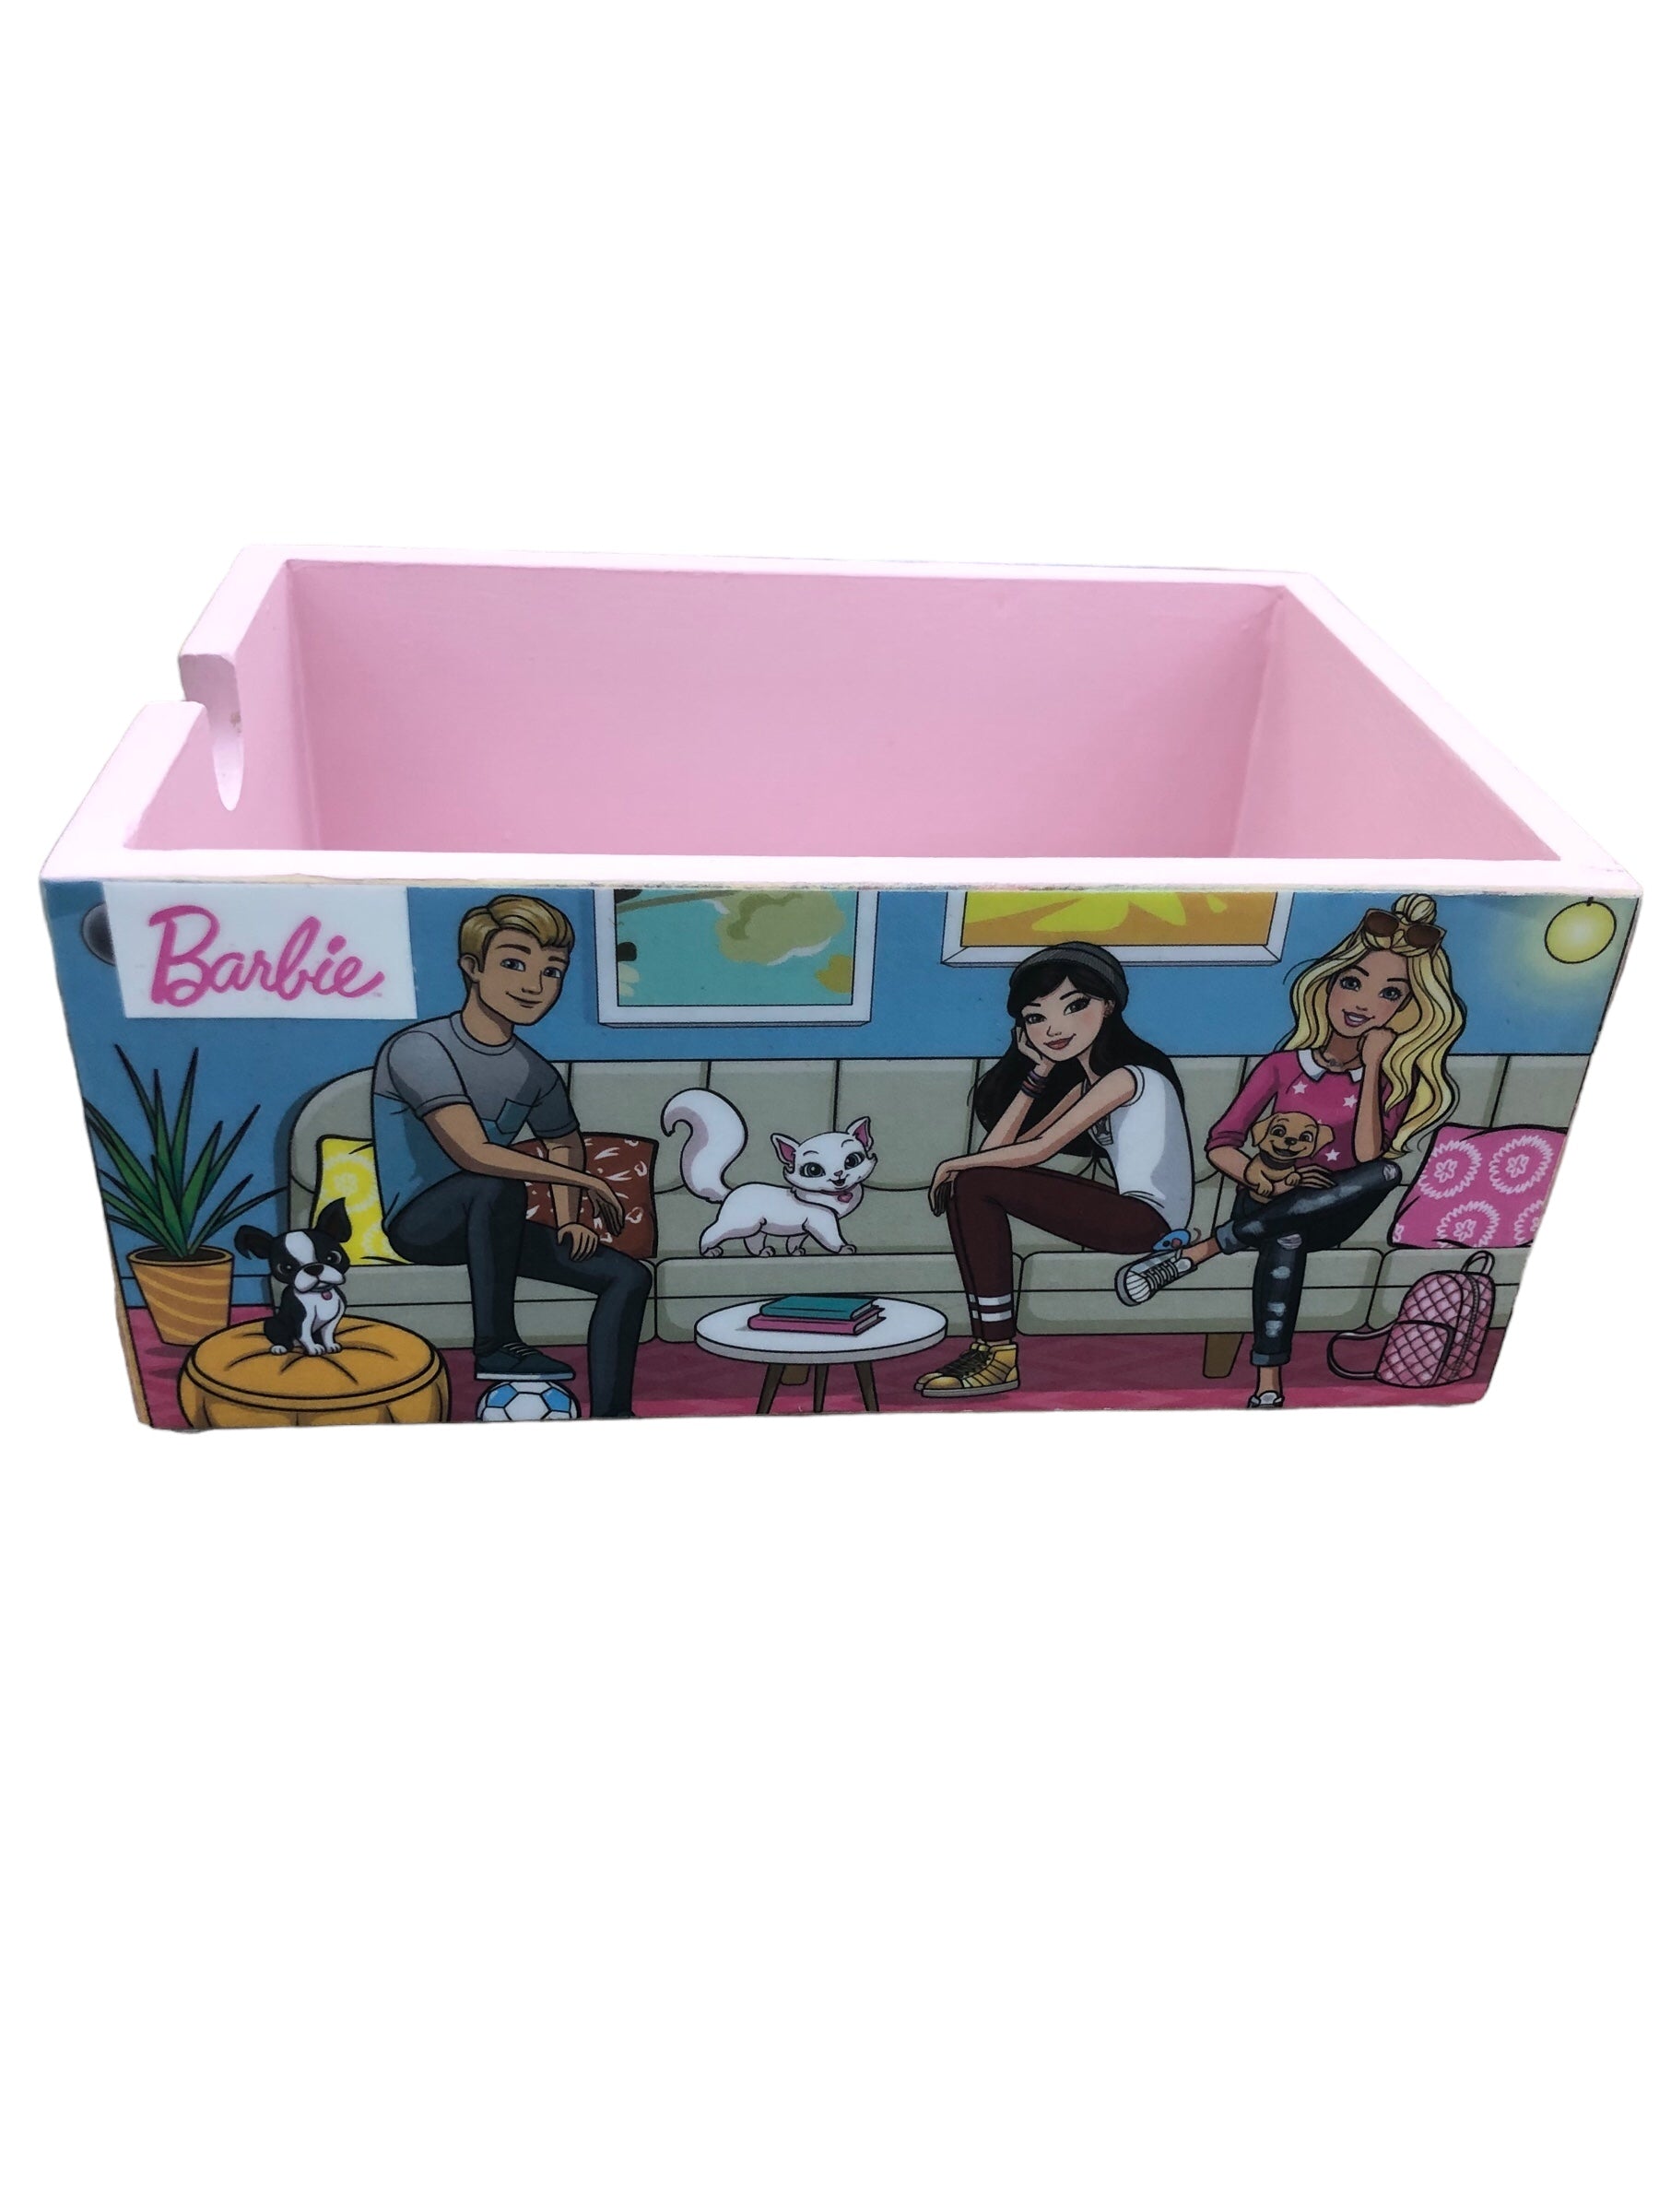 Barbie storage box